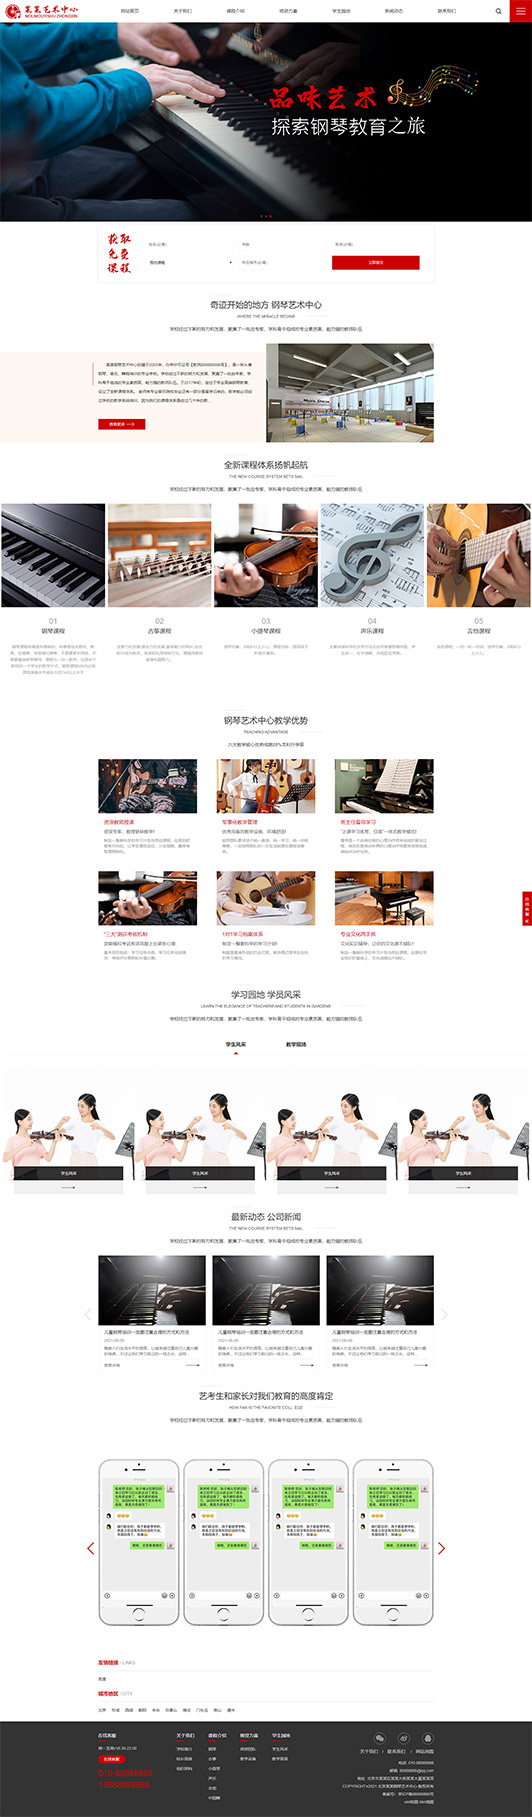 宝鸡钢琴艺术培训公司响应式企业网站